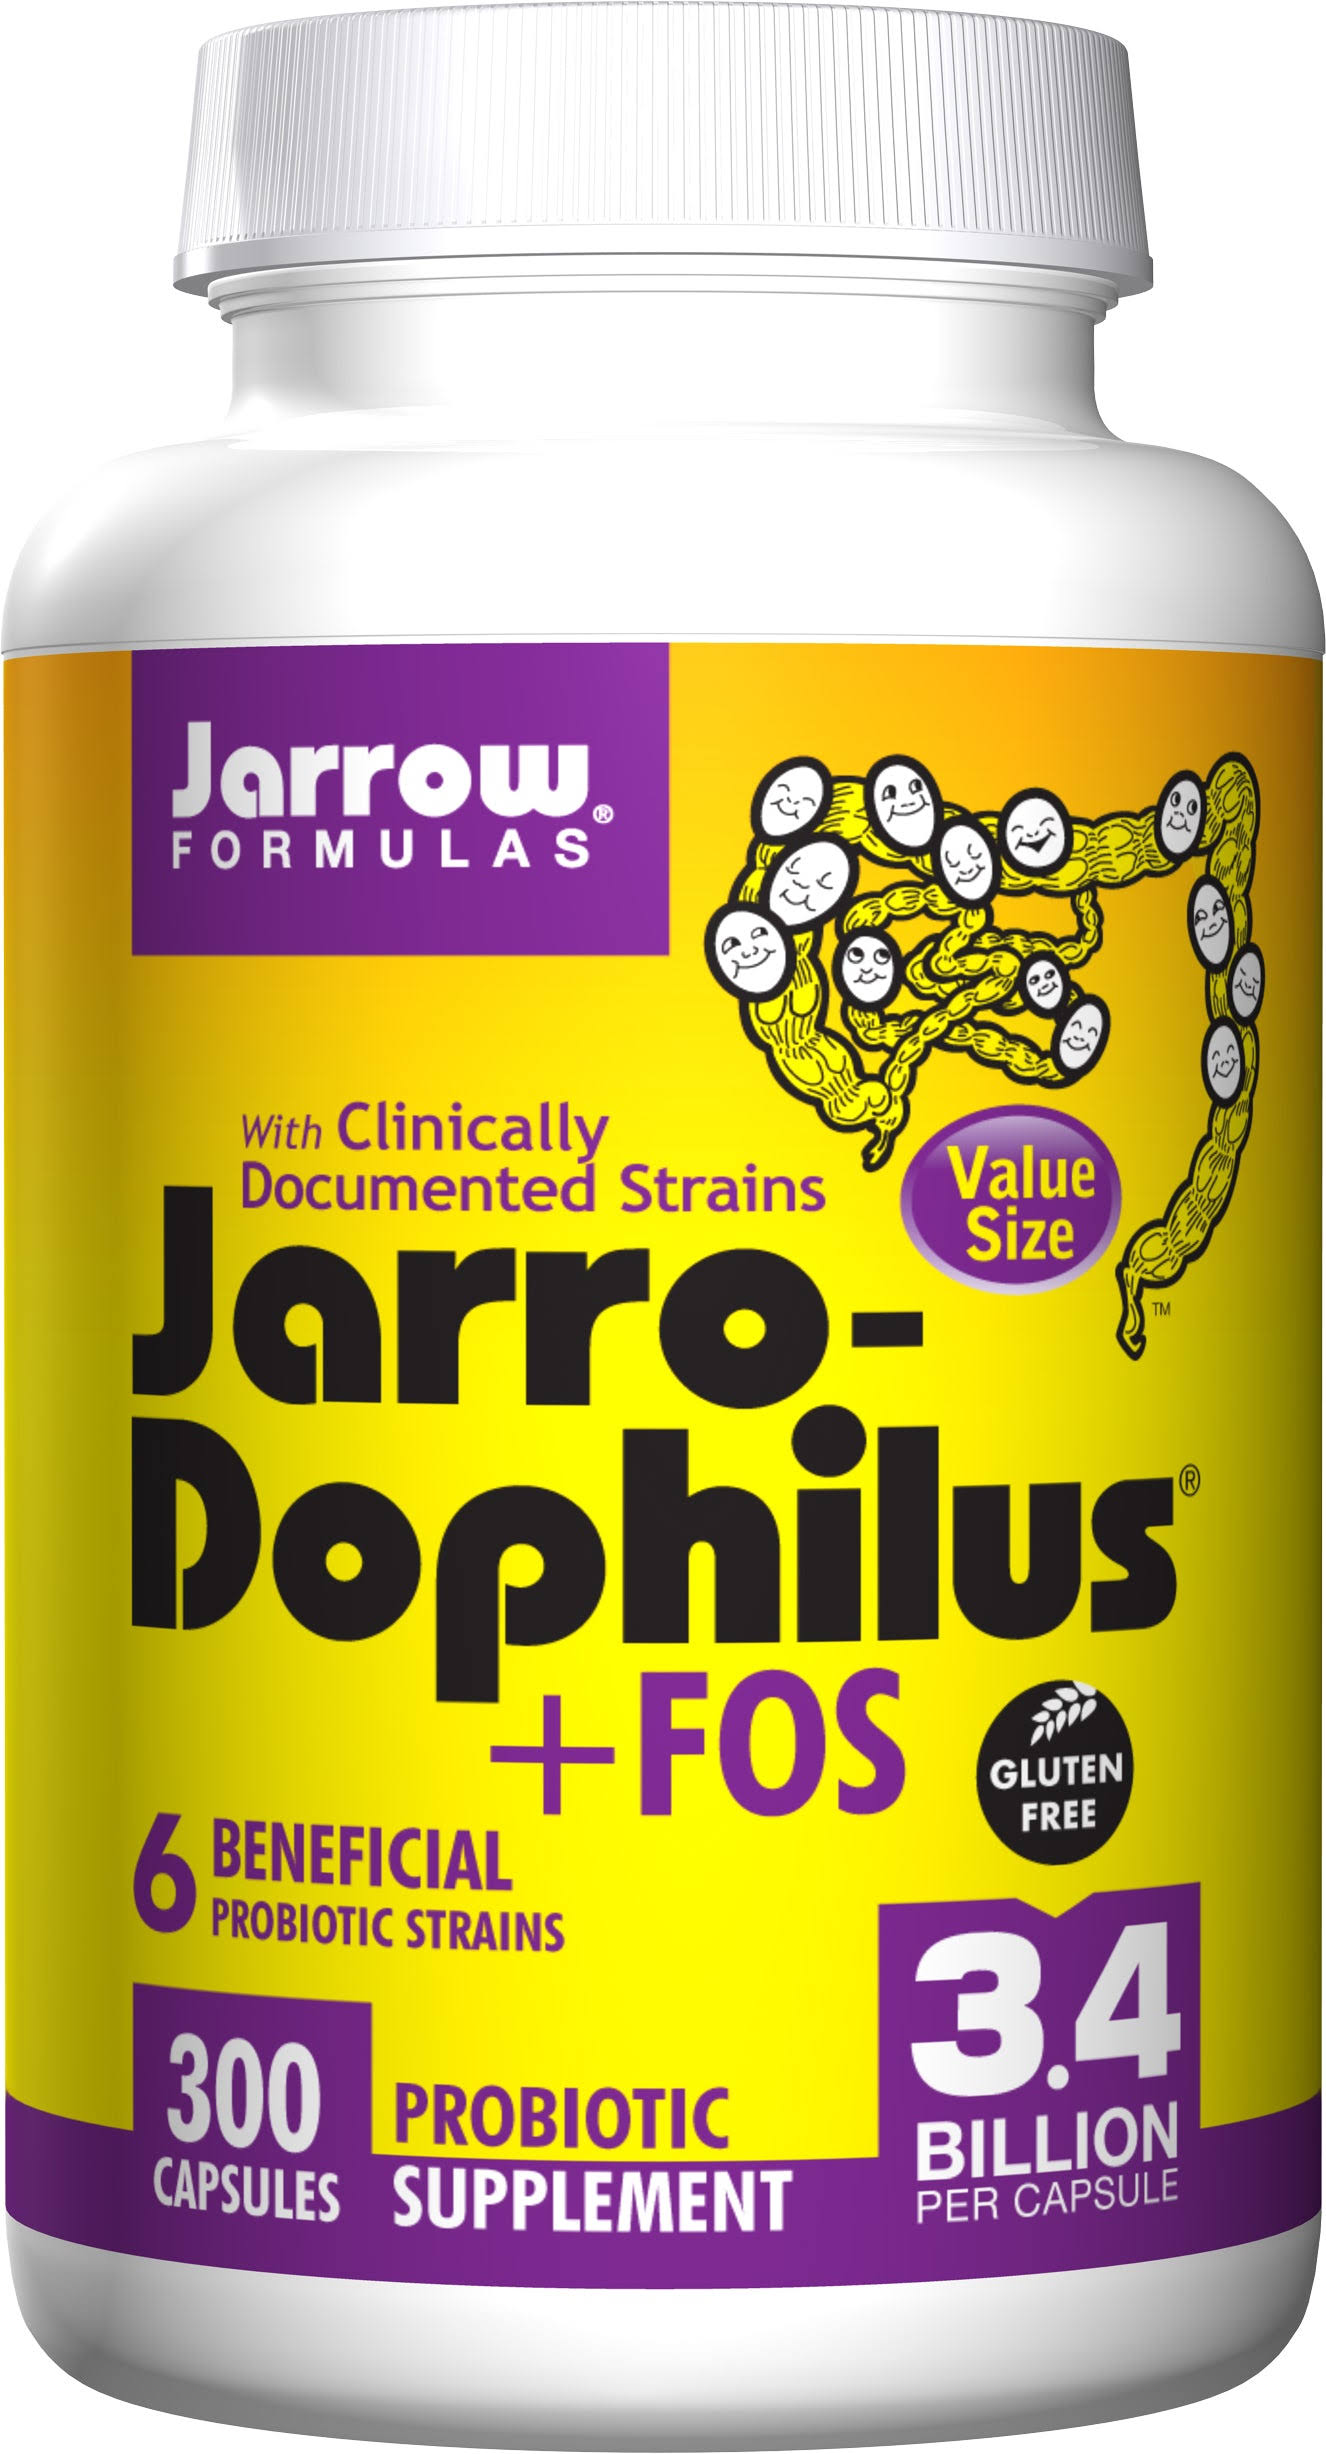 Jarrow Formulas Jarro-Dophilus FOS - 300 Capsules